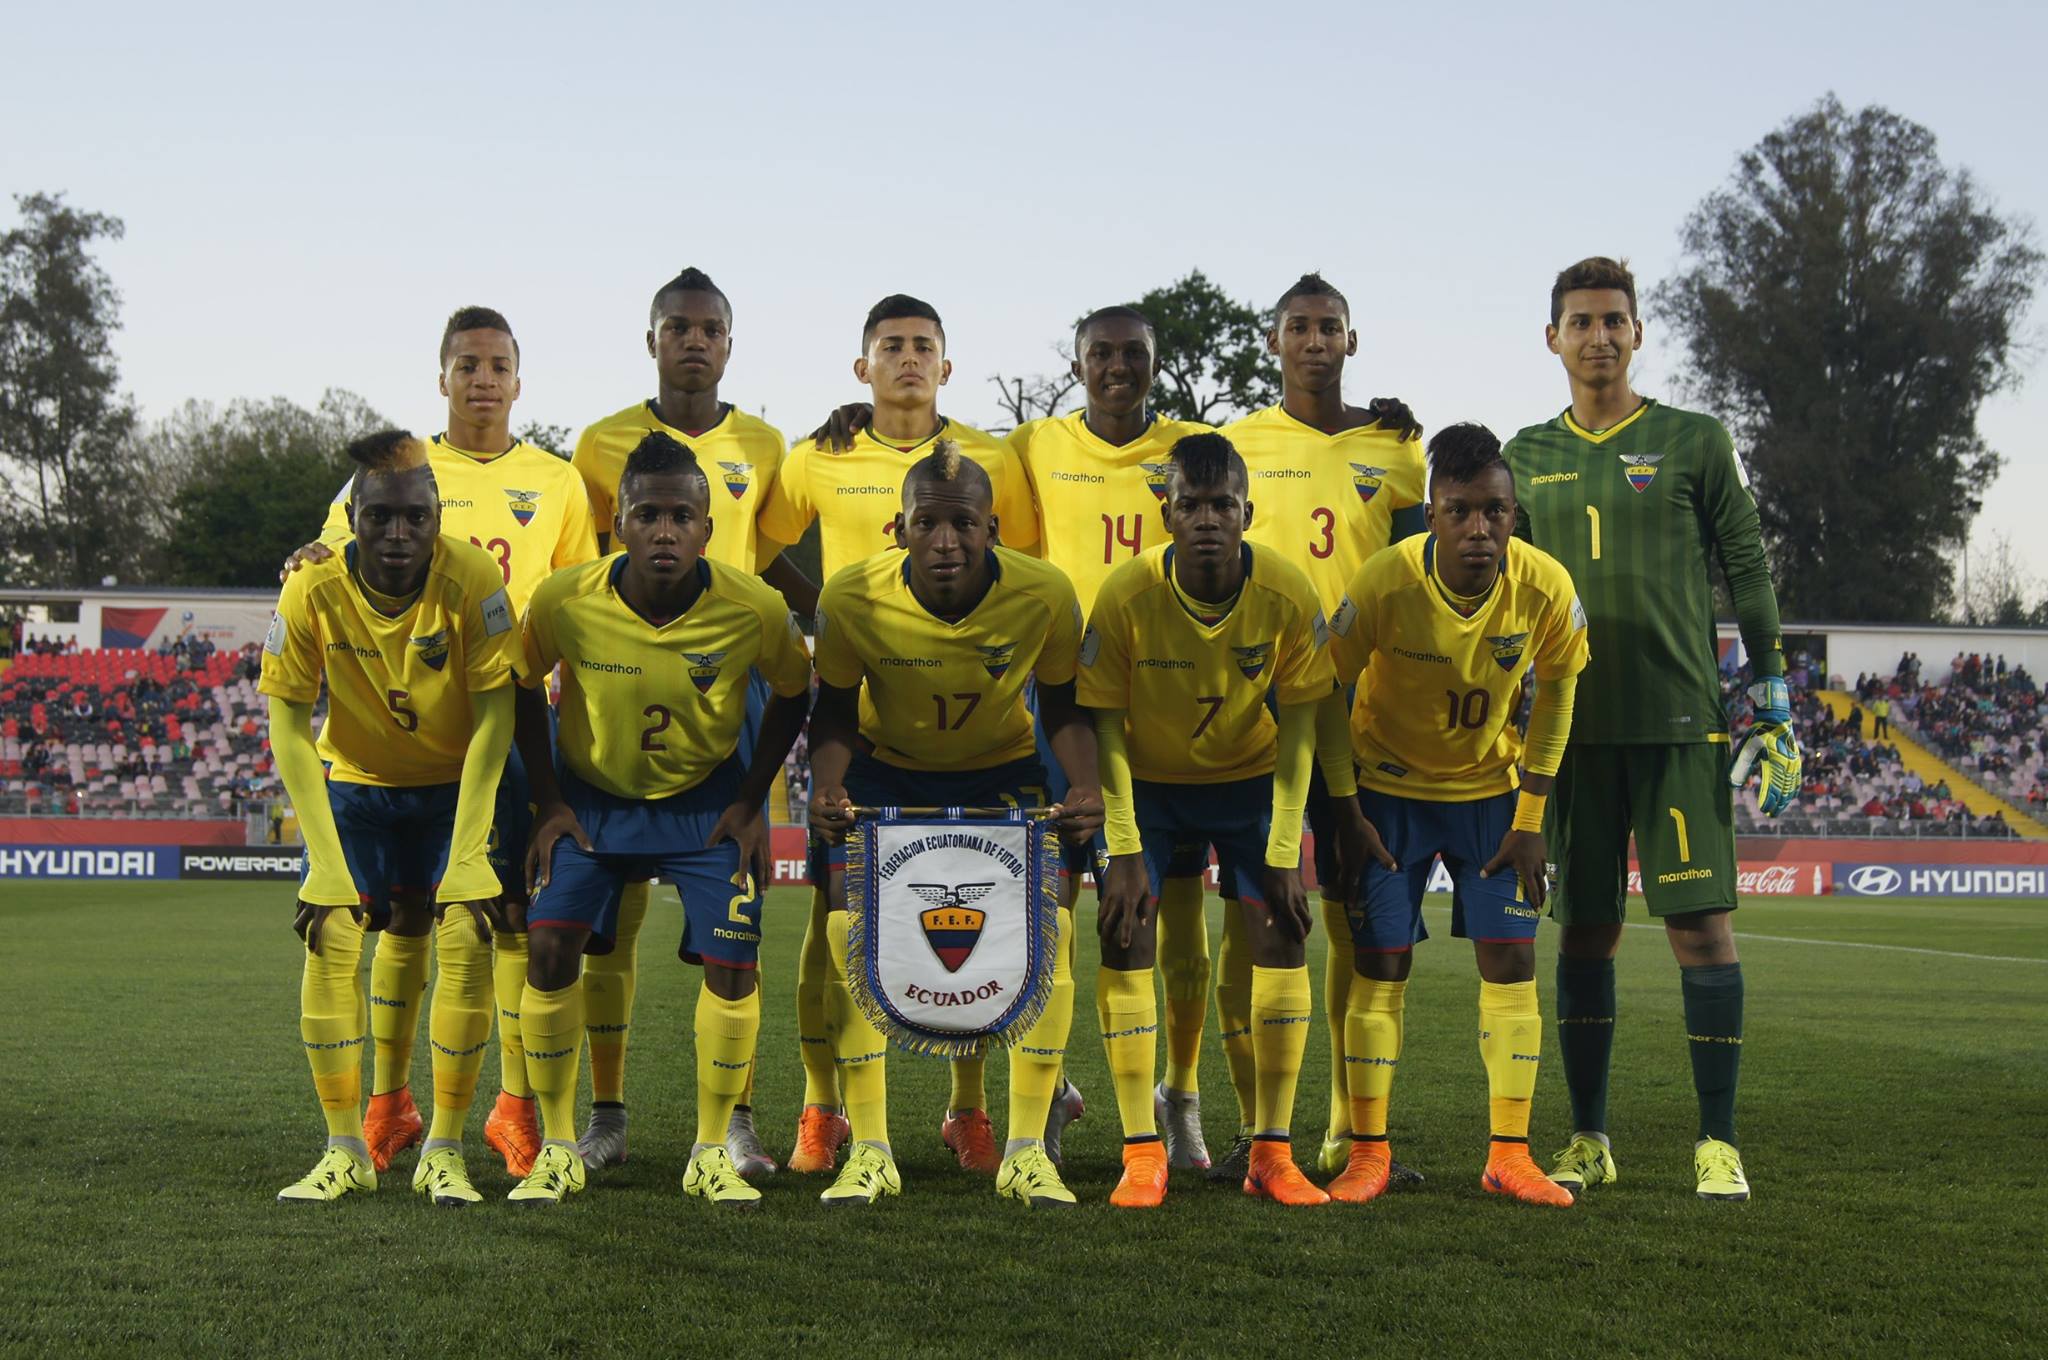 Brasil venció 3-1 a Ecuador por el Mundial Sub 17 y espera al